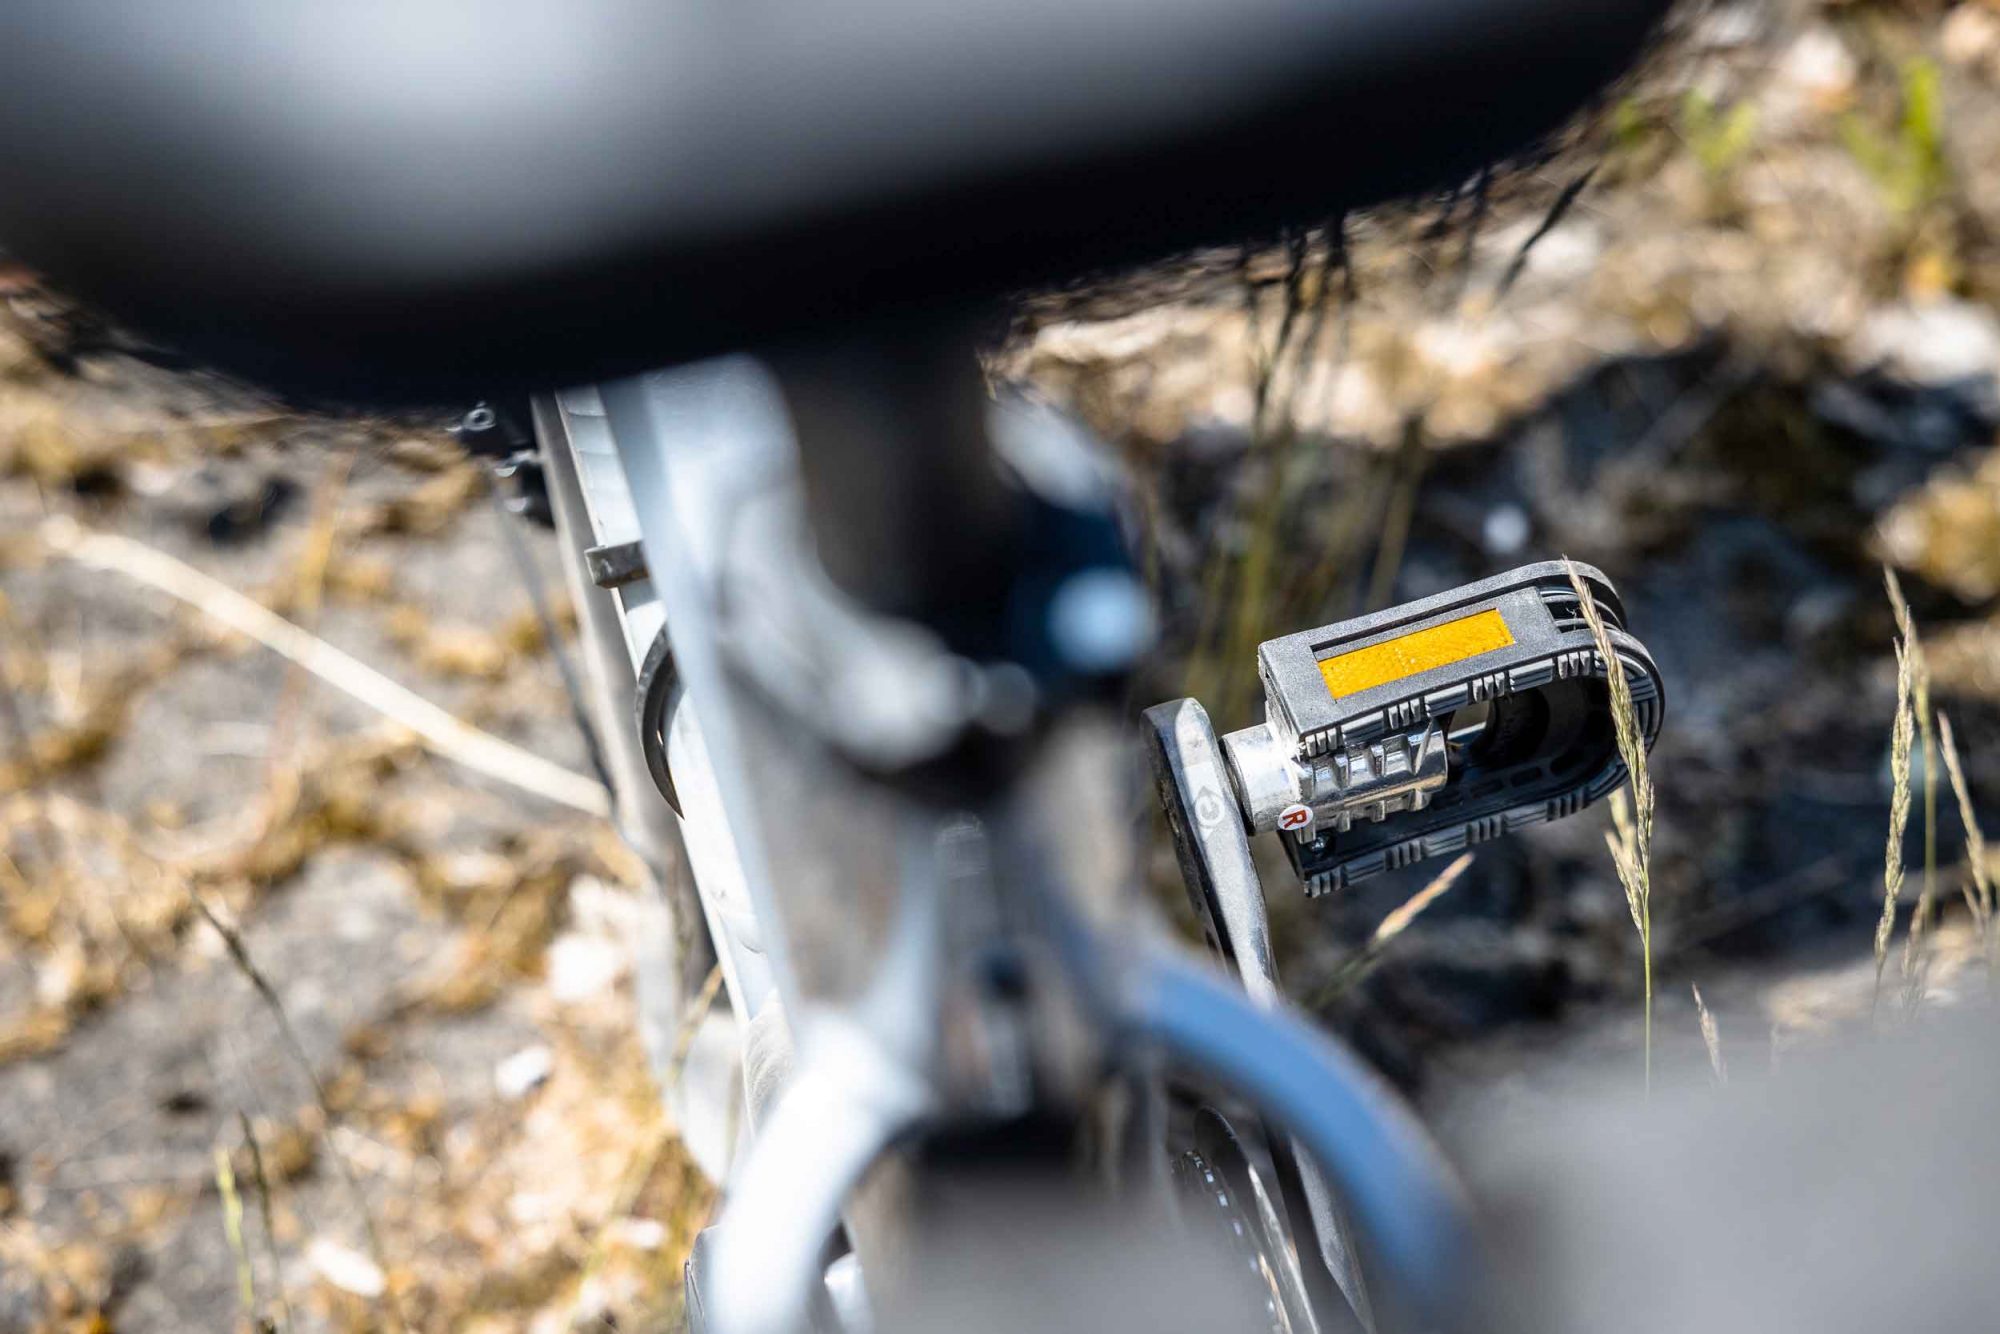 Die marwi pedale sp-153 lassen sich vertikal hochklappen. Dieses detail wirkt auf den ersten blick etwas unnötig, spätestens in der bahn ergibt es aber sinn. Mit hochgeklappten pedalen kann das rad noch enger an die wand des zuges angelehnt werden.